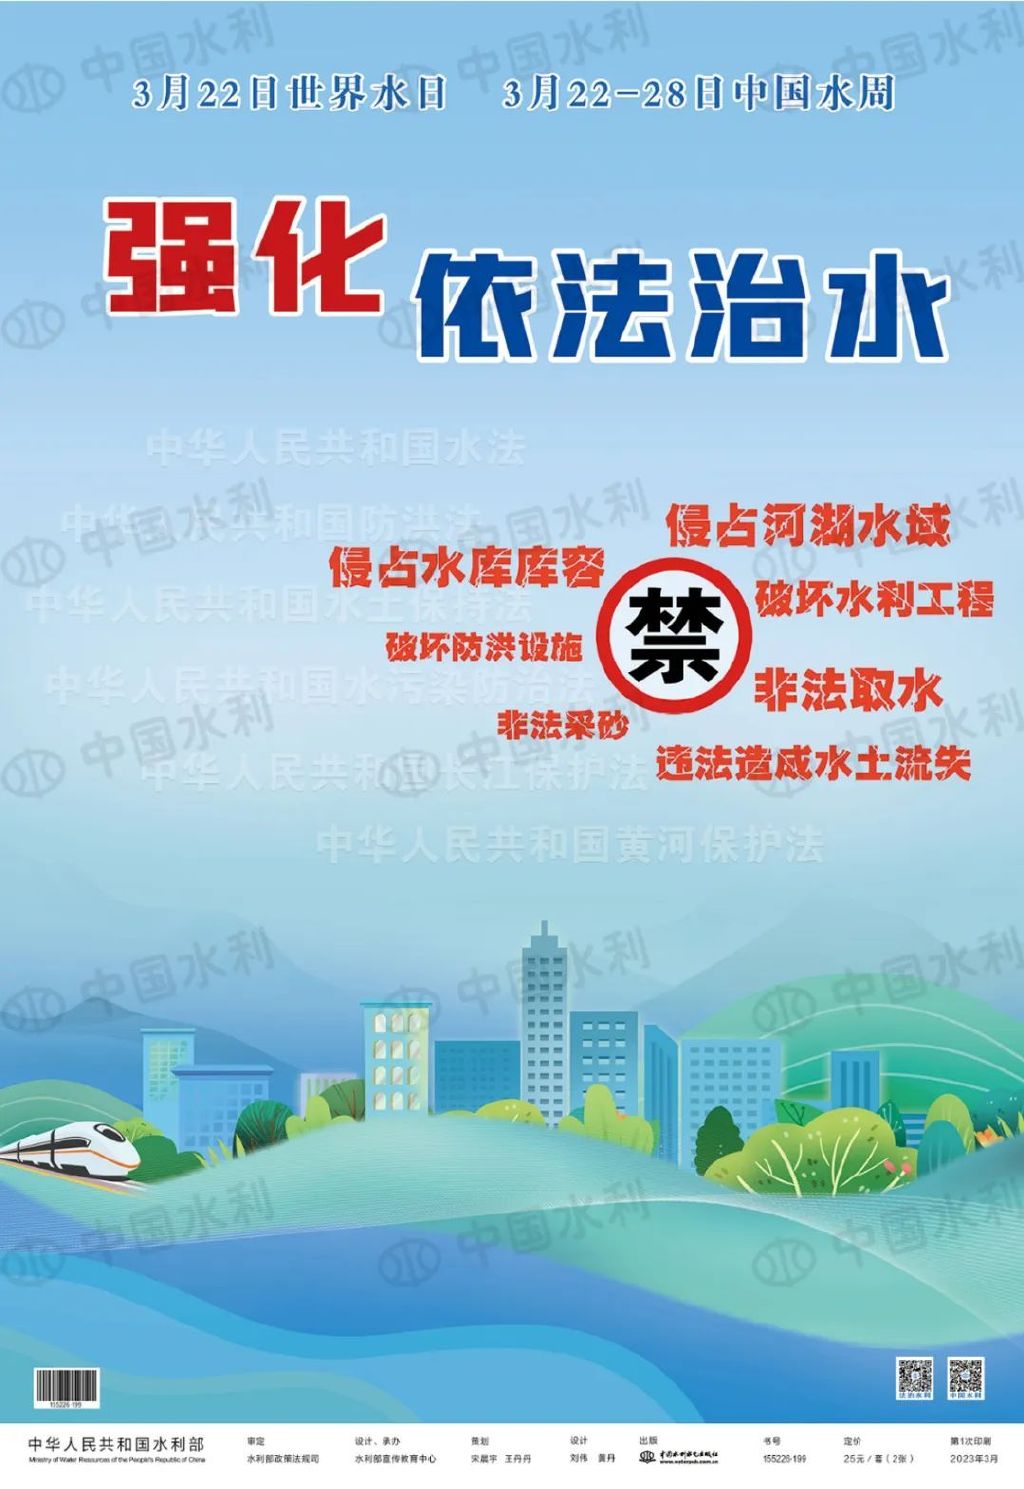 水利部发布2023年“世界水日”“中国水周”主题宣传画1.jpeg